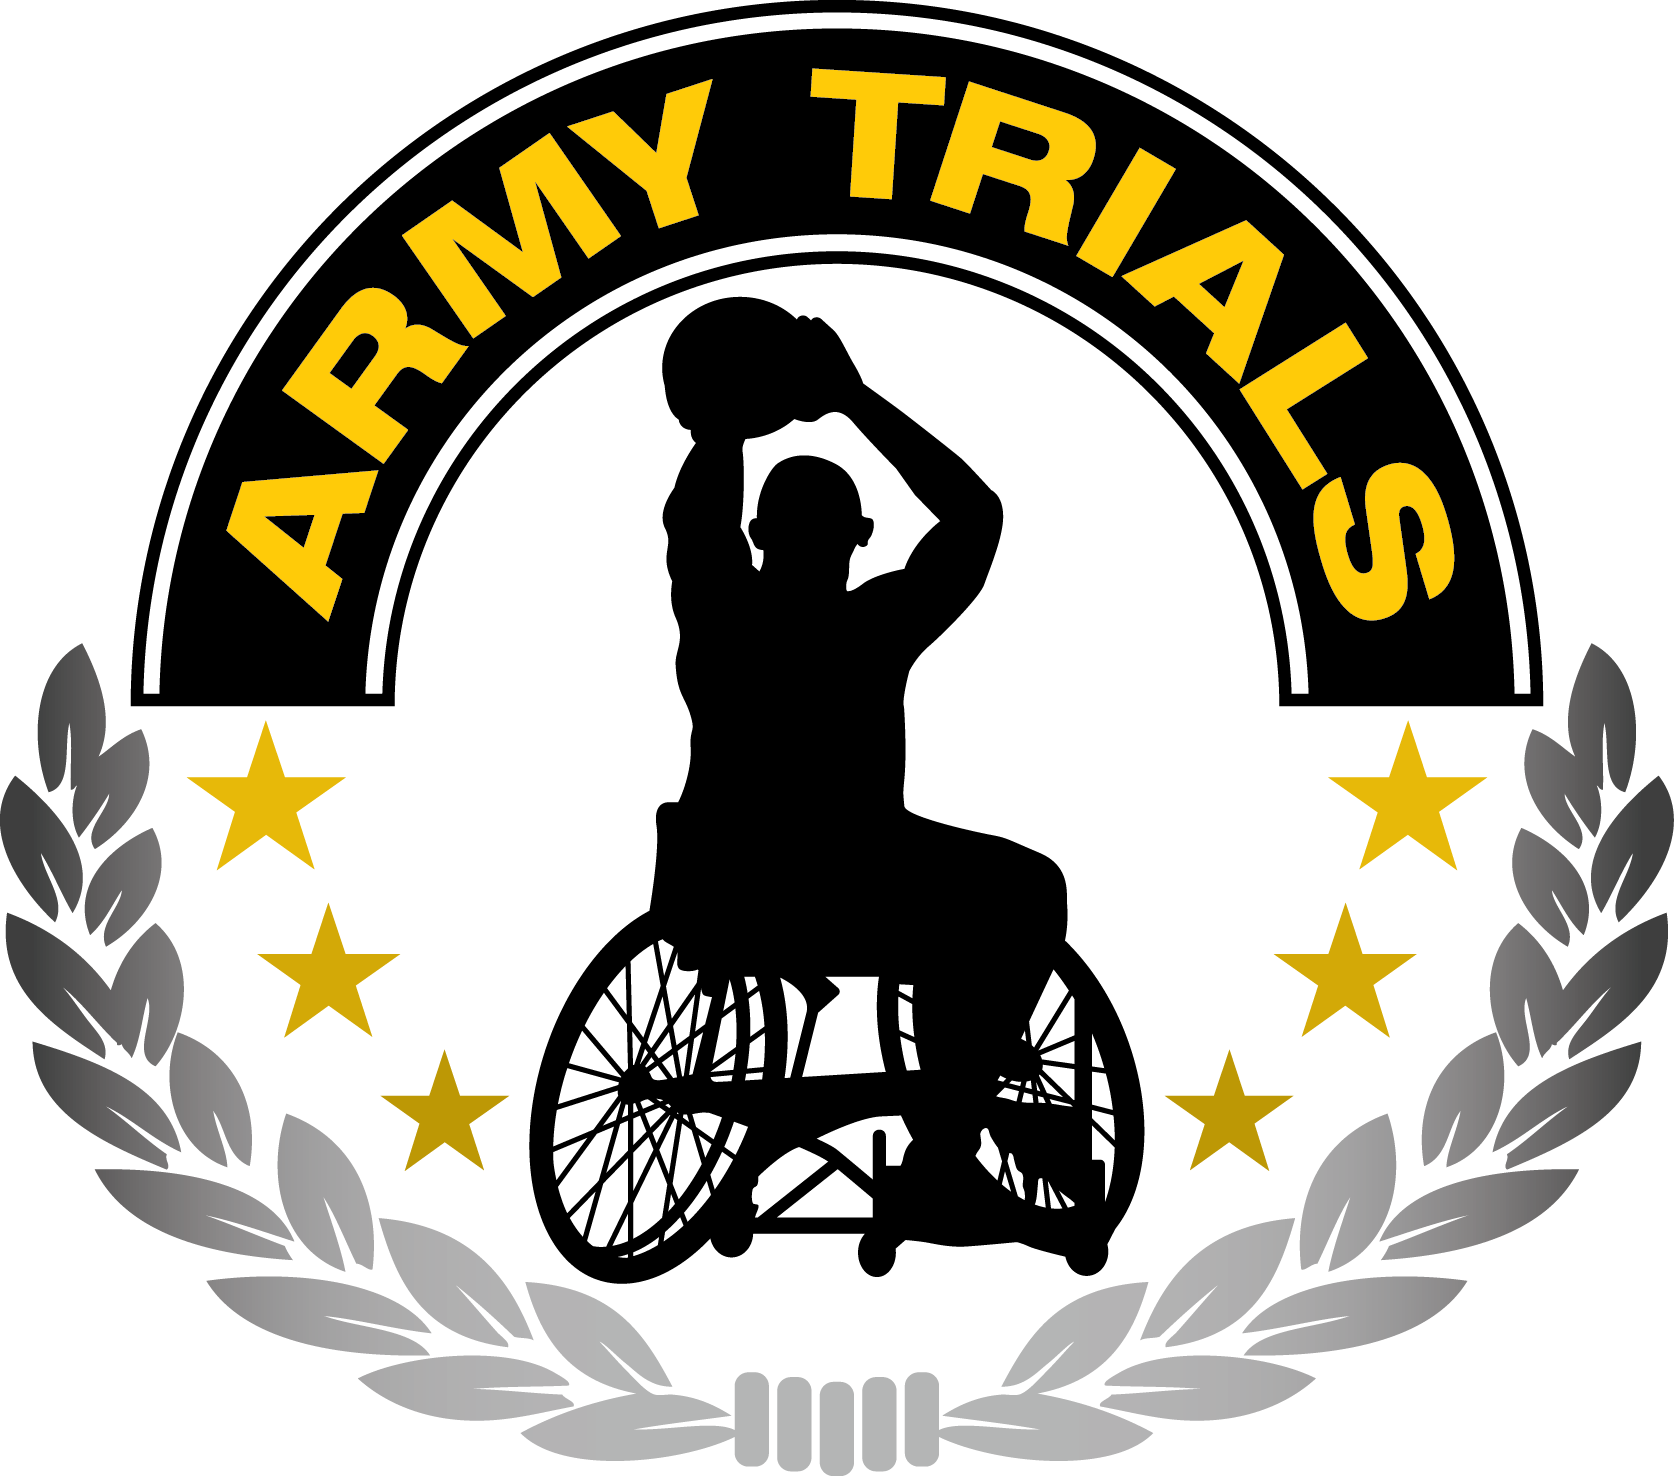 2016 Army Trials